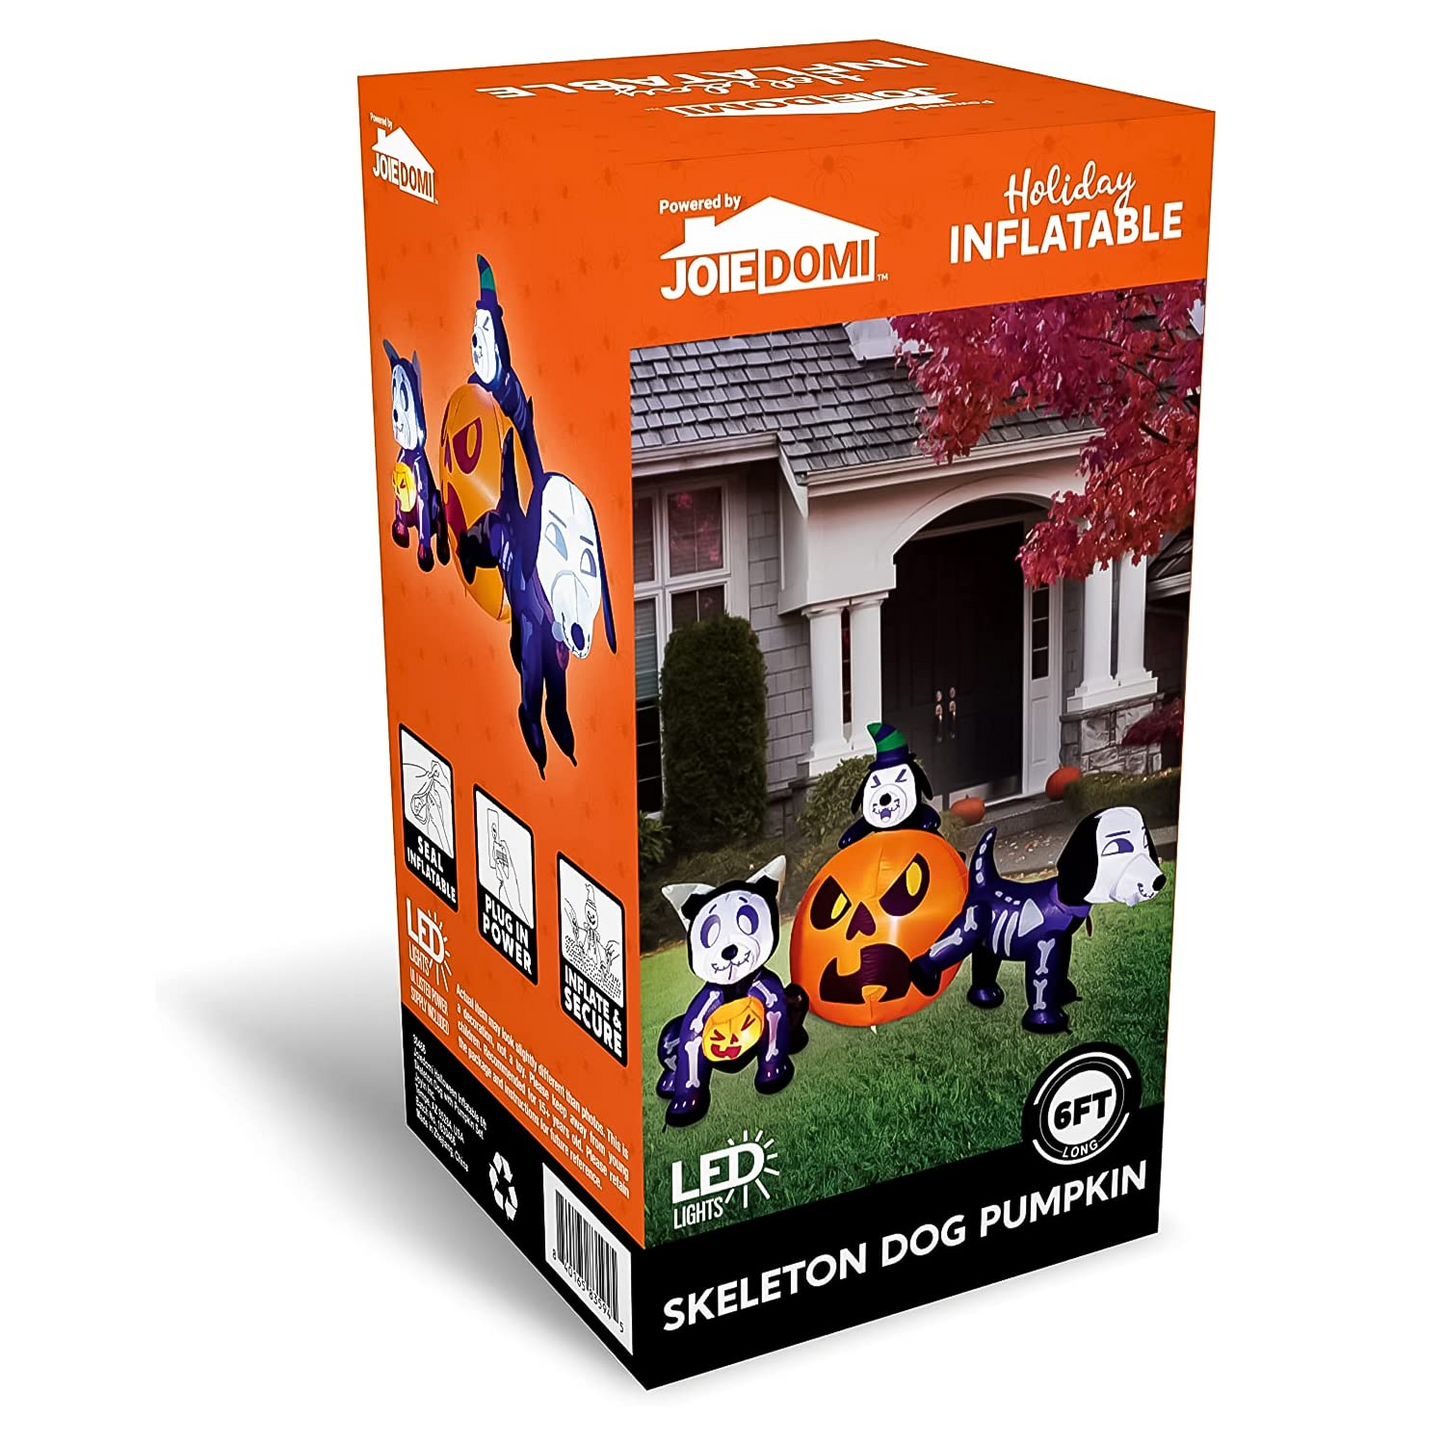 6ft Halloween Skeleton Dog with Pumpkin Set